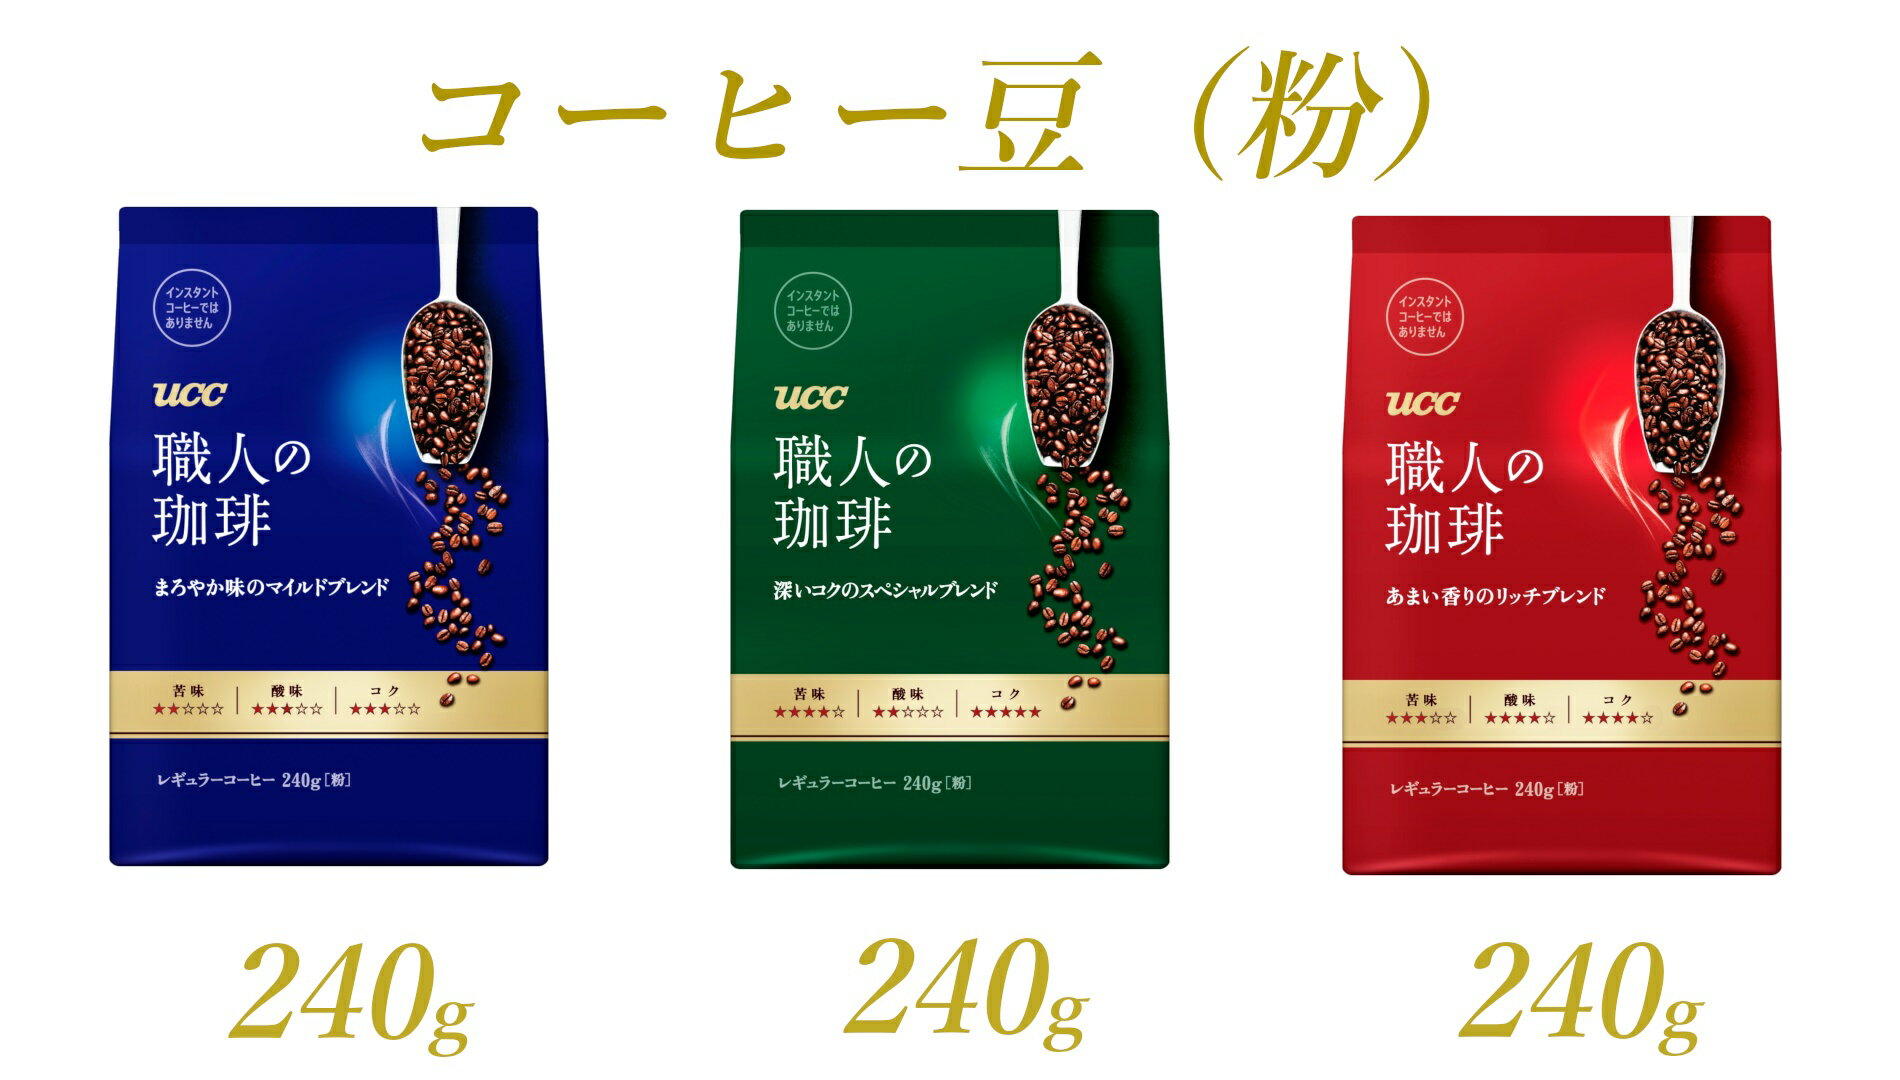 UCC 職人の珈琲 コーヒー豆(粉) 3種セット 計3袋